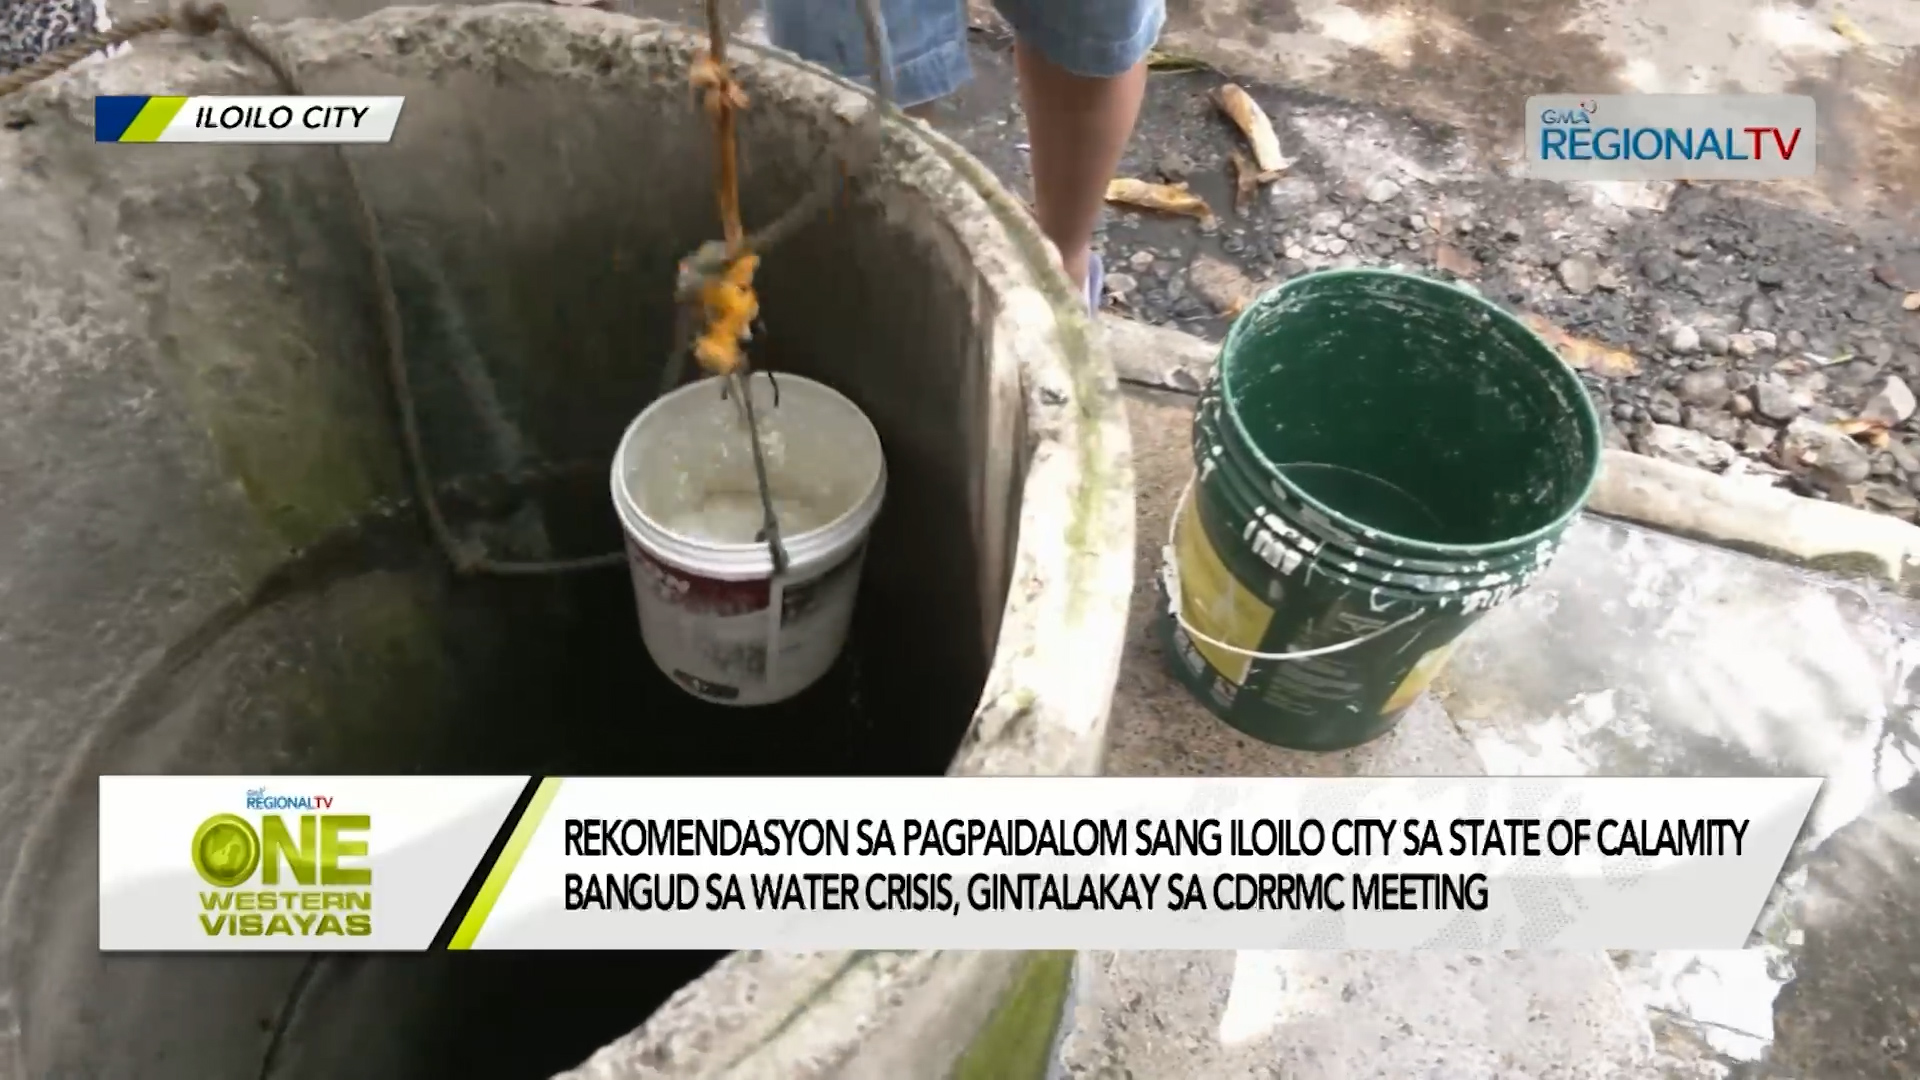 Plano nga ipaidalom ang Iloilo City sa state of calamity bangud sa water crisis